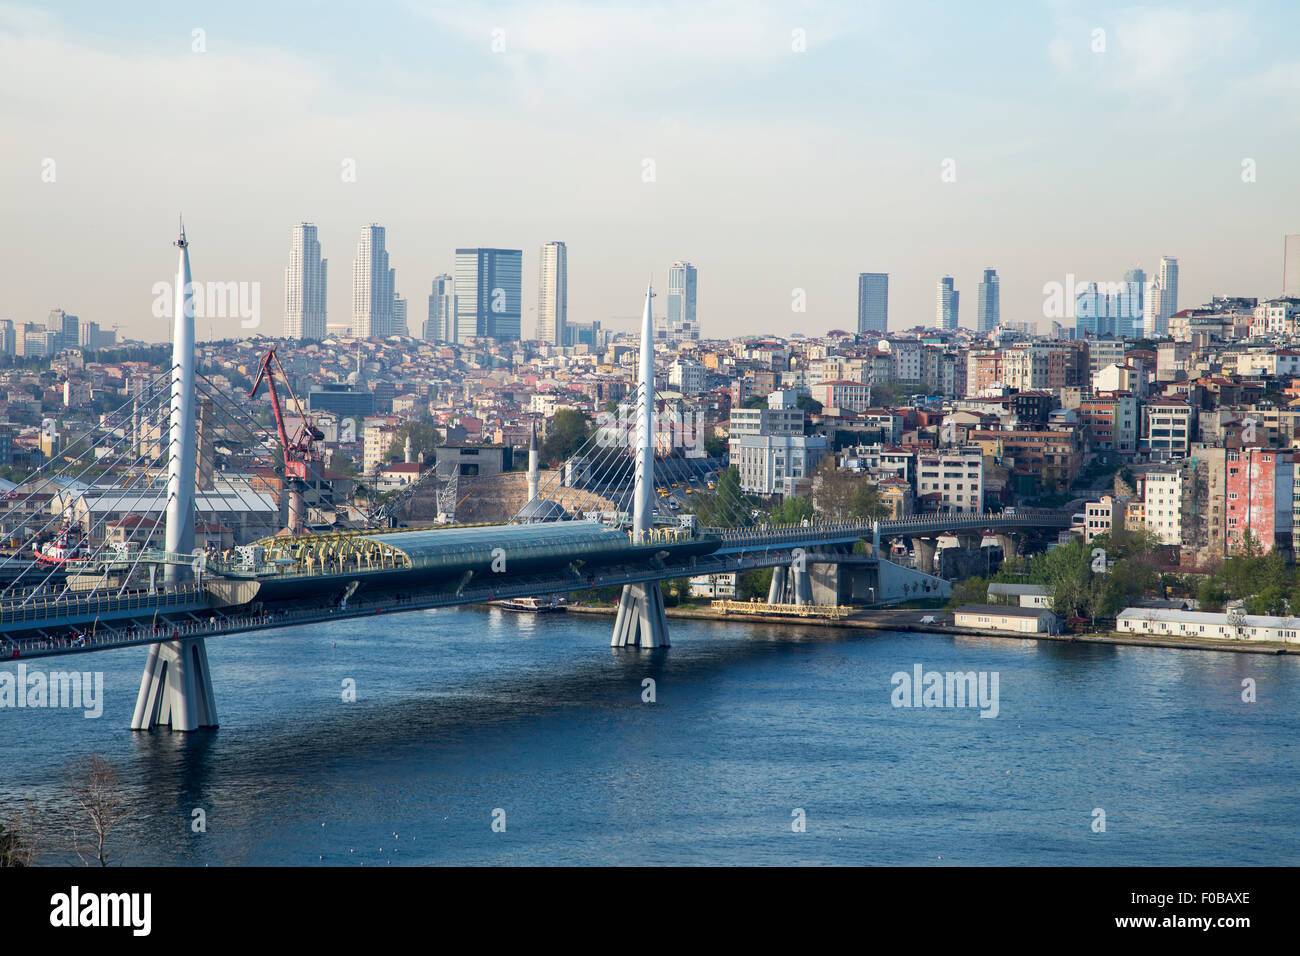 Goldene Horn U-Bahn Brücke mit alten und modernen Seite von Istanbul Hintergrundansicht während der Tageszeit. Viele Gebäude und Blick aufs Meer Stockfoto